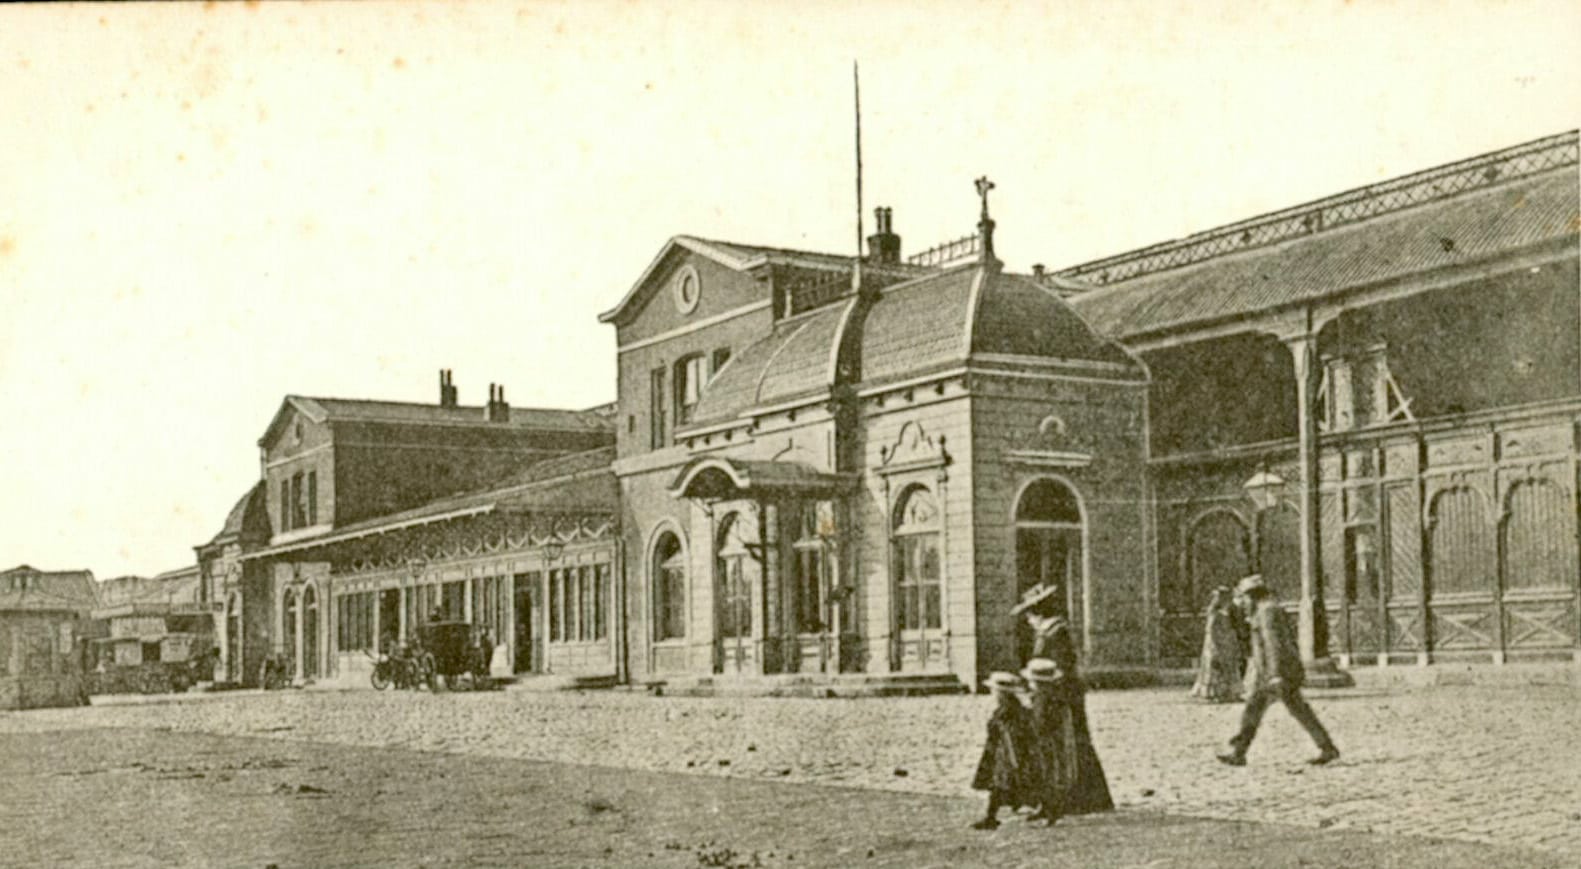 Façade van het Weesperpoortstation, 1843, prentbriefkaart. Foto circa 1900, fotograaf onbekend, Het Utrechts Archief (162821).